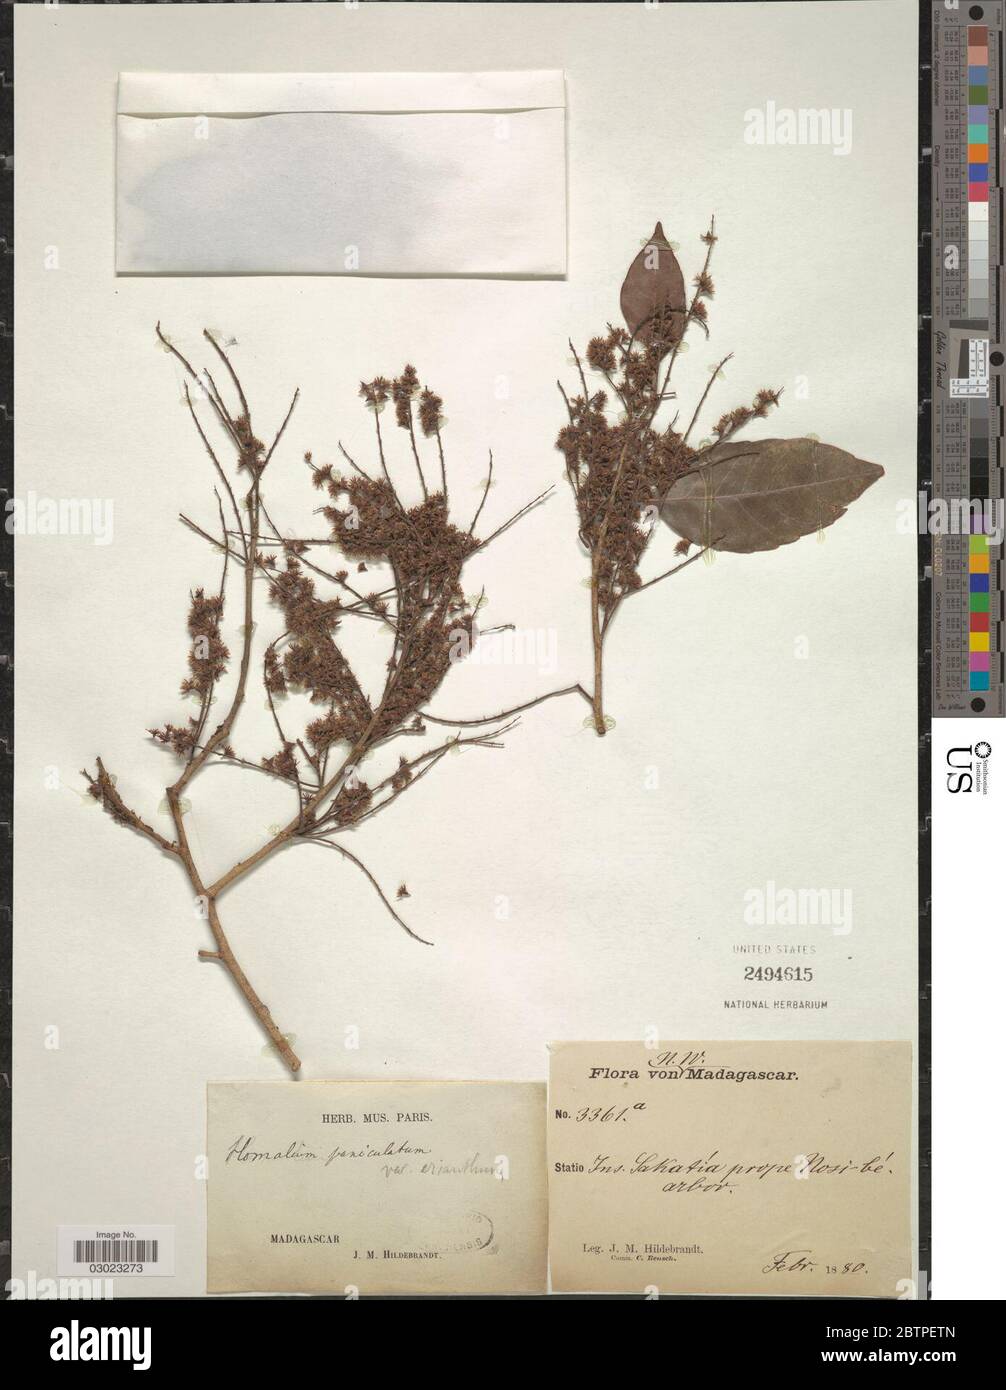 Homalium paniculatum Lam Benth. Stock Photo